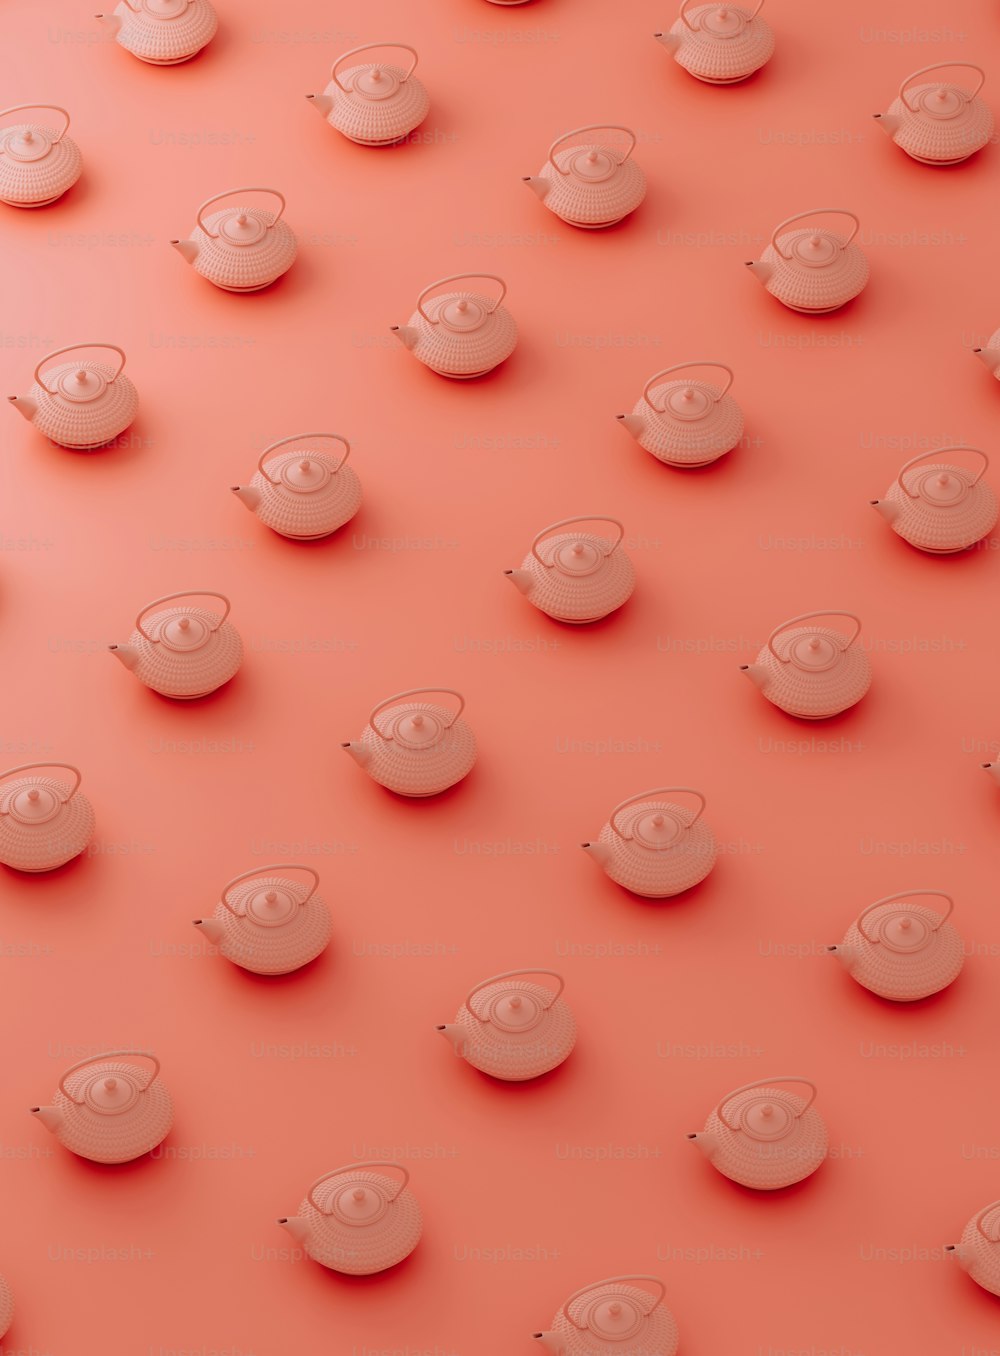 eine Gruppe von Tassen und Untertassen auf einer rosa Oberfläche